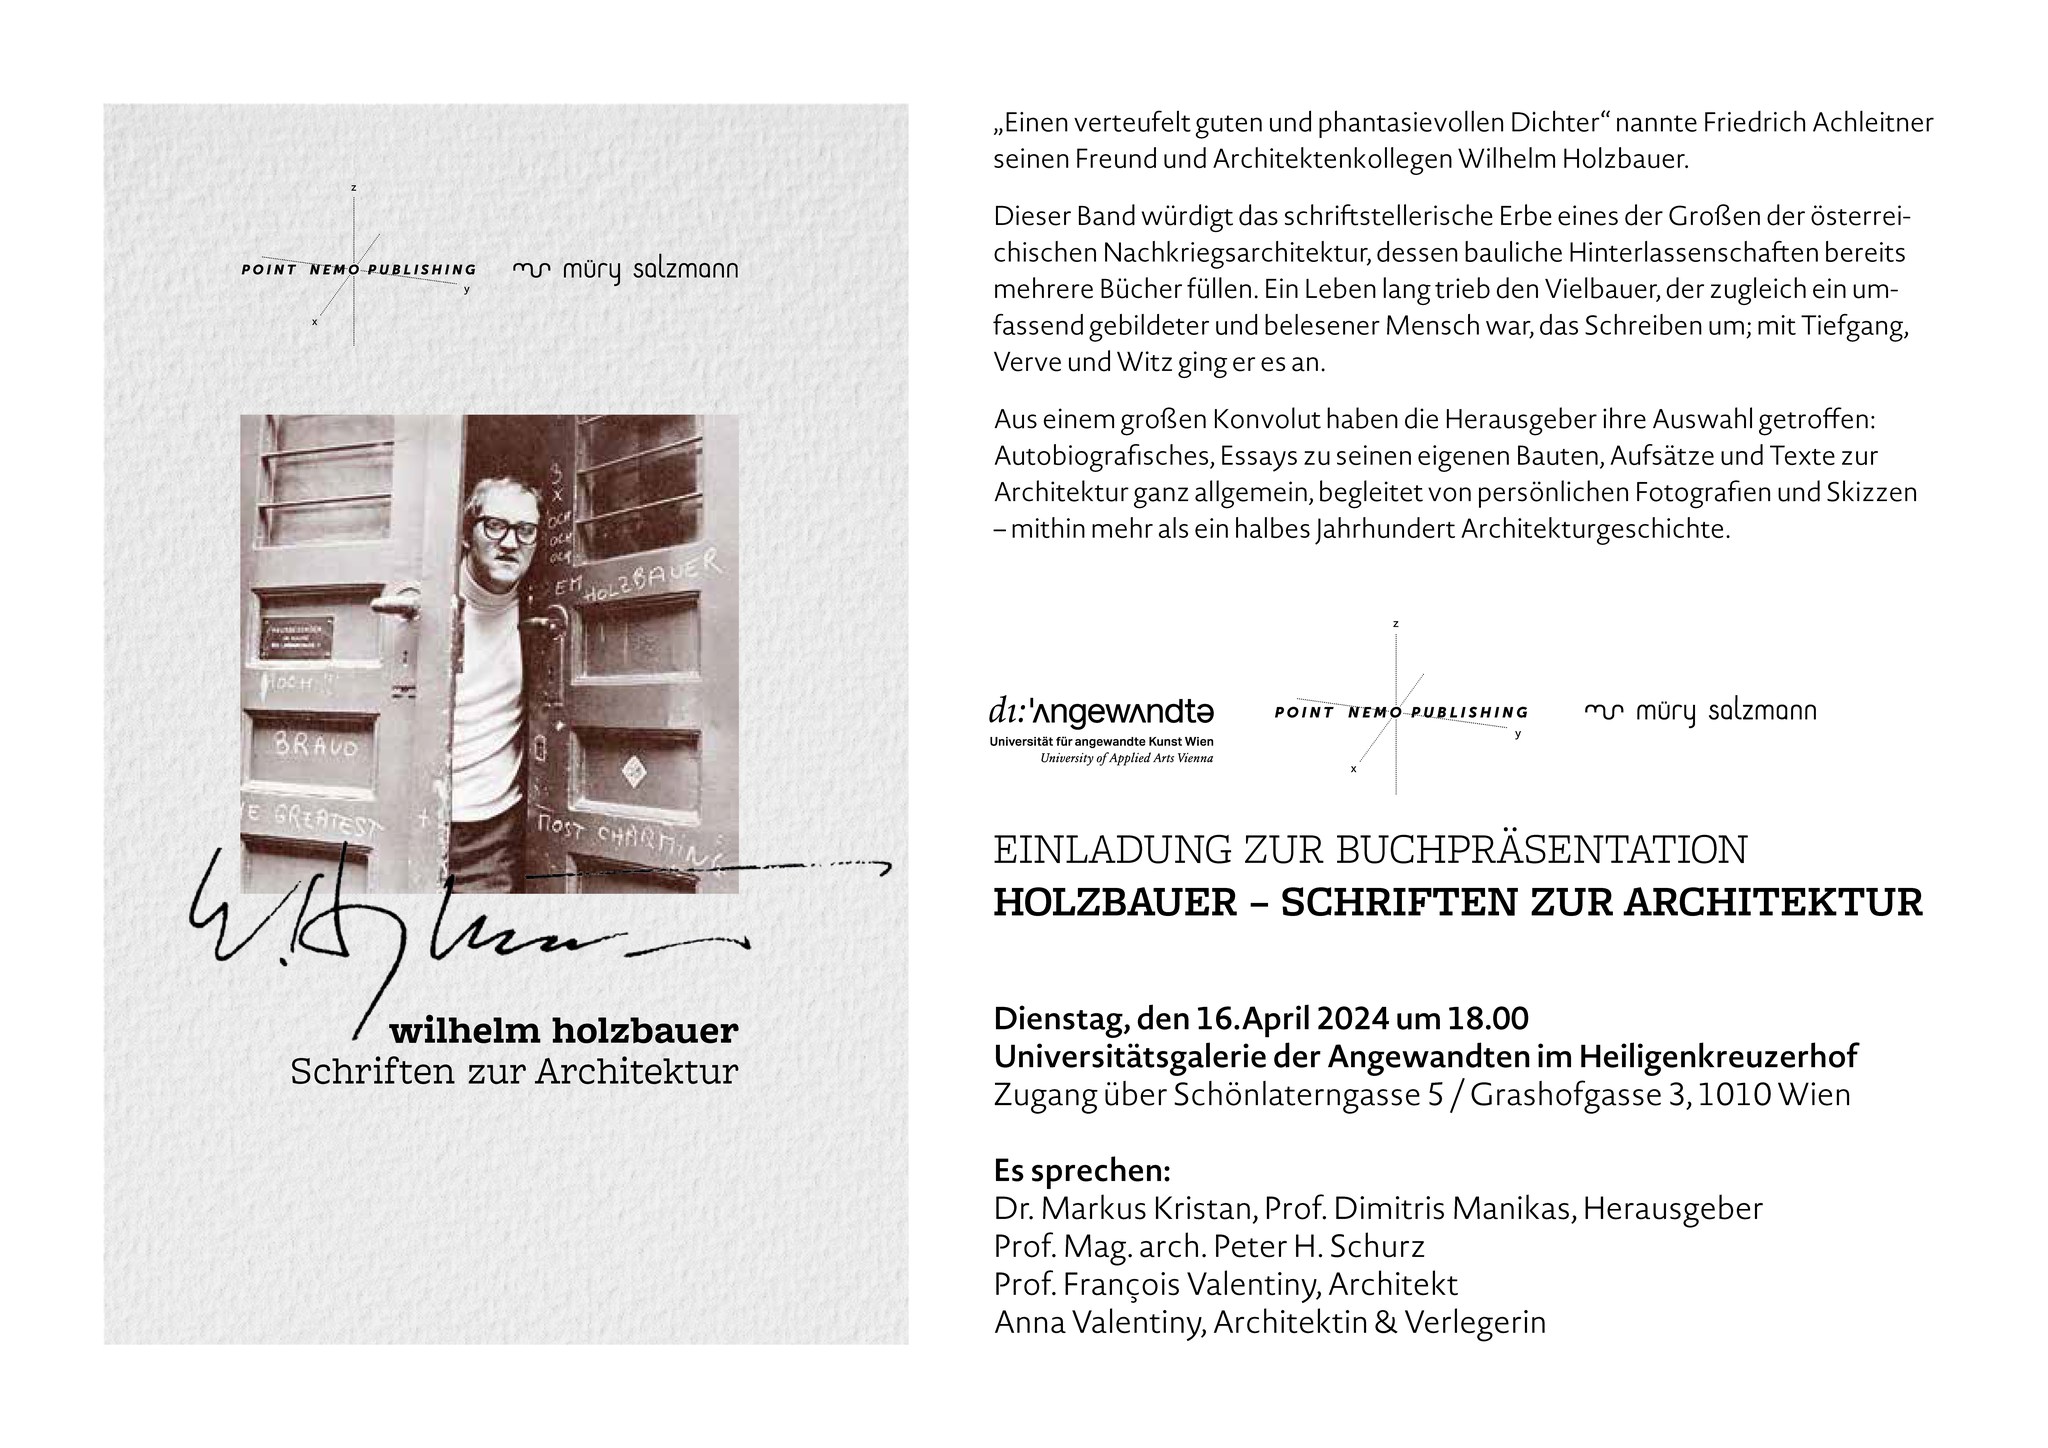 Point Nemo Publishing / Anna Valentiny - Buchpräsentation "Holzbauer - Schriften zur Architektur"